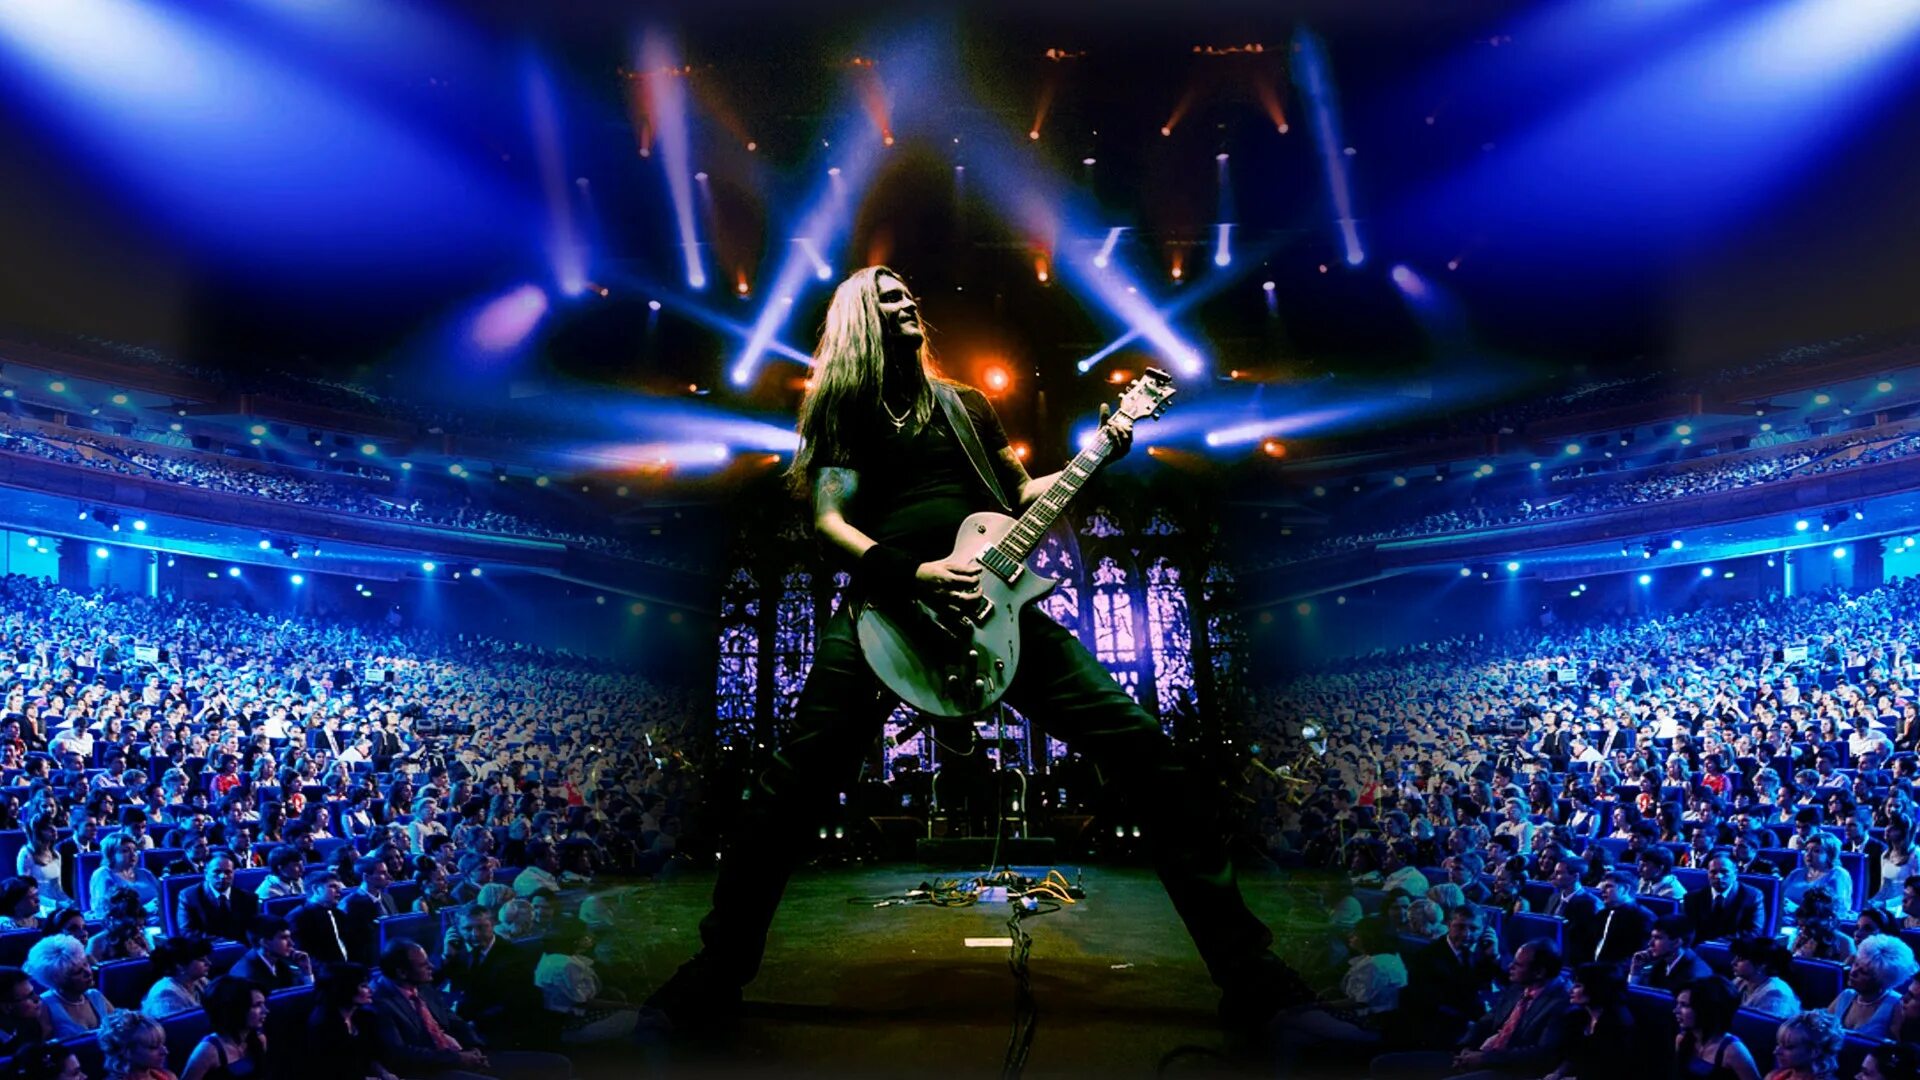 Концерт металлика трибьют. Metallica show s&m Tribute с симфоническим оркестром. Металлика 2022 концерт. Металлика Кремлевский дворец.